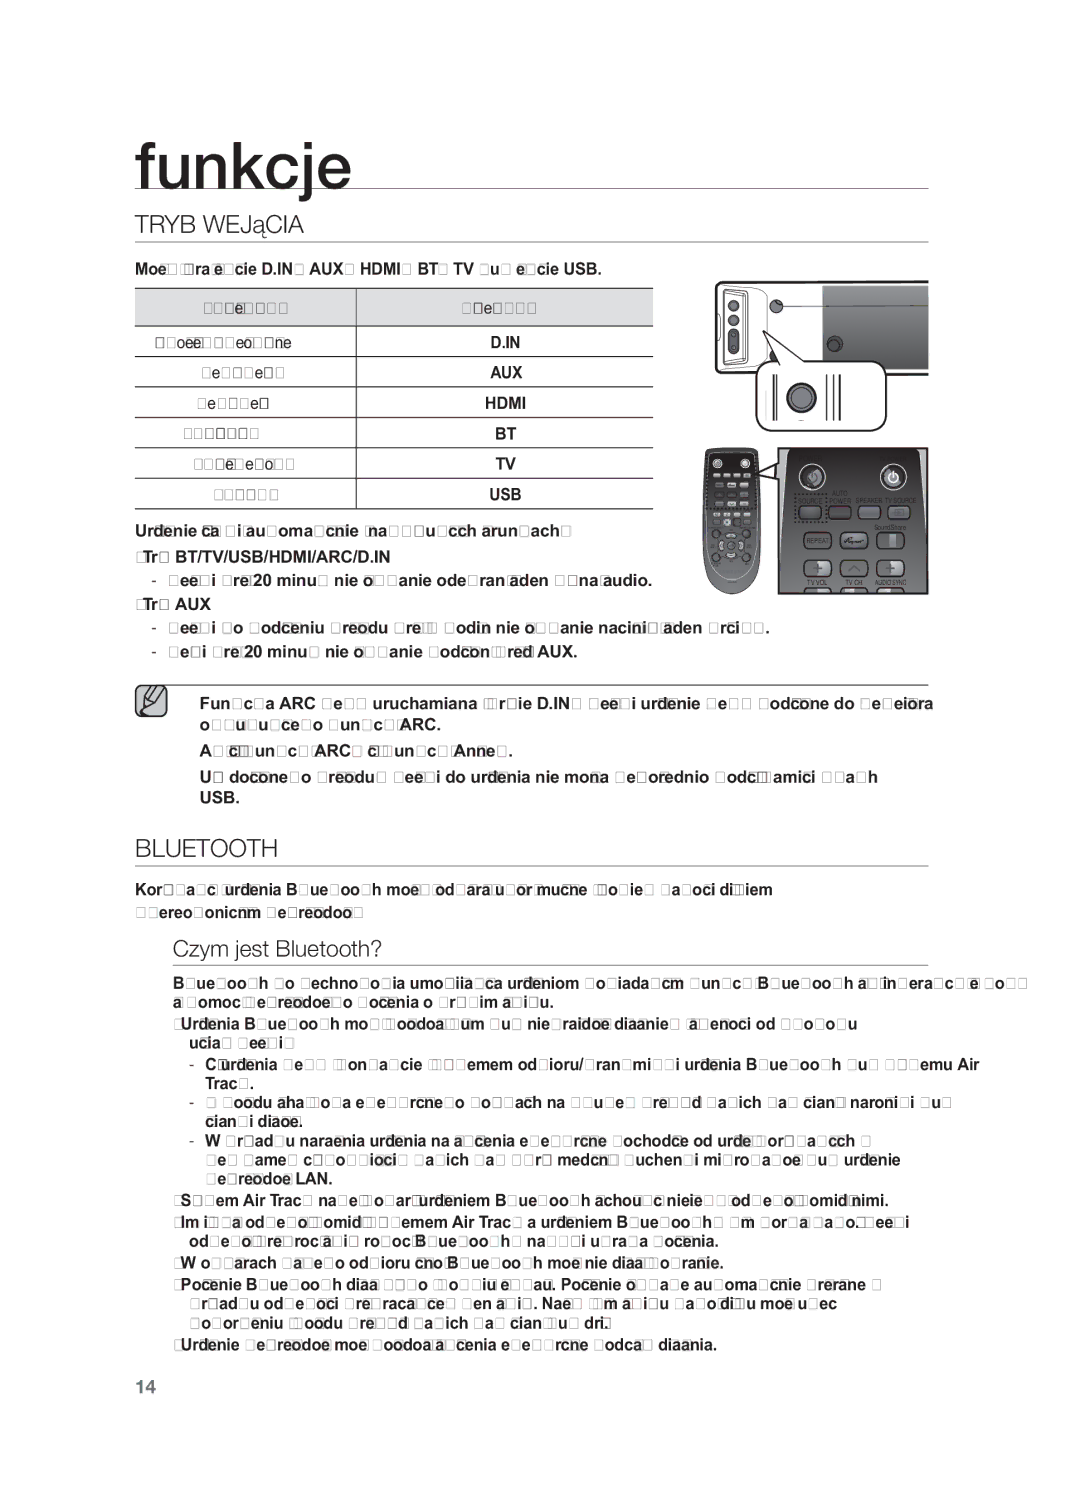 Samsung HW-F450/EN, HW-F450/XE manual Funkcje, Tryb Wejścia, Czym jest Bluetooth? 